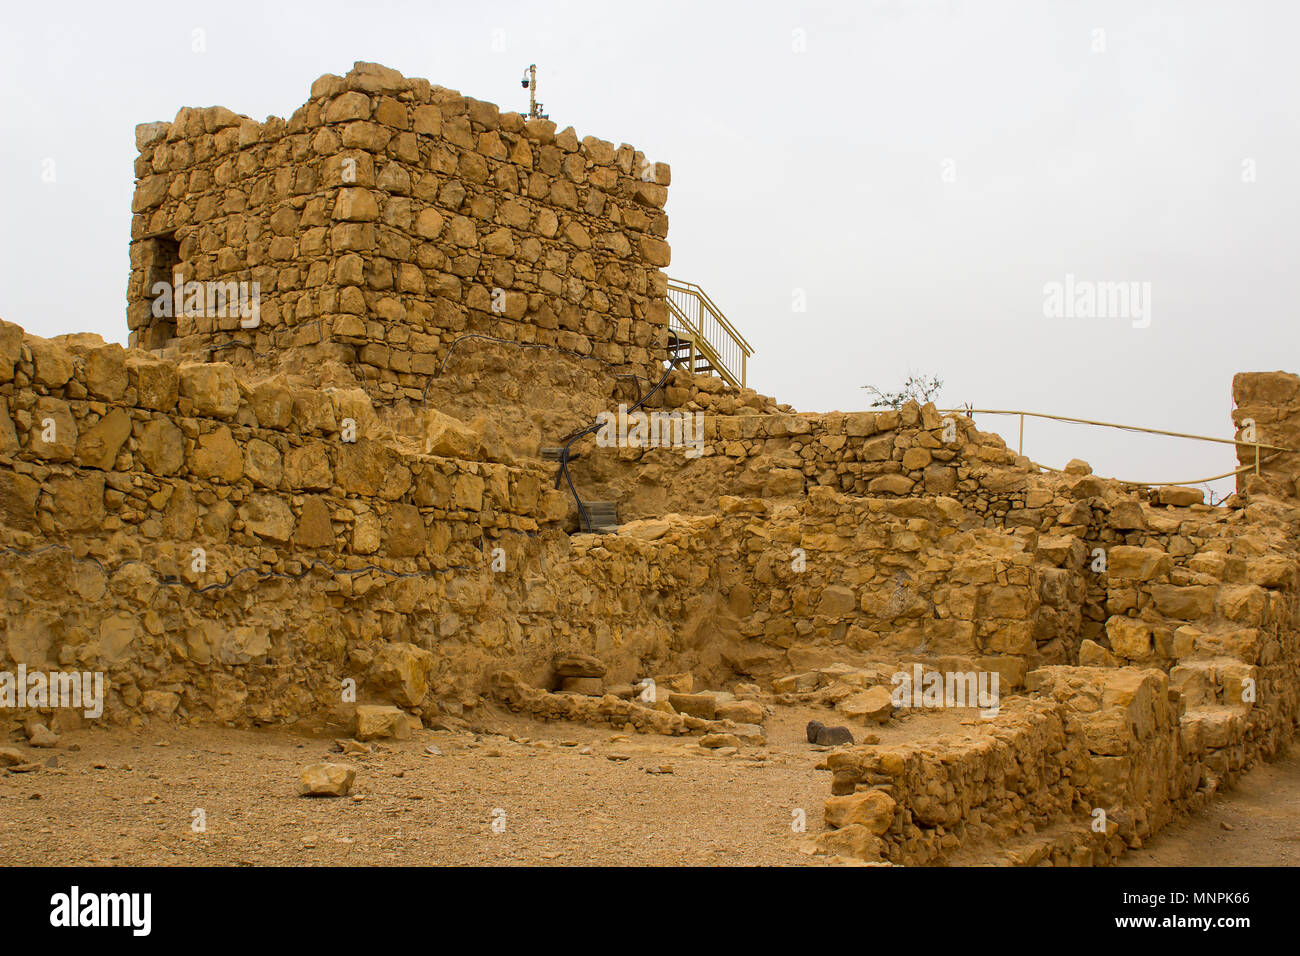 Alcuni ricostruiti i ruderi di antiche Jewish clifftop fortezza di Masada in Israele sud. Questa è stata la scena di una storica suicidio di massa. Foto Stock